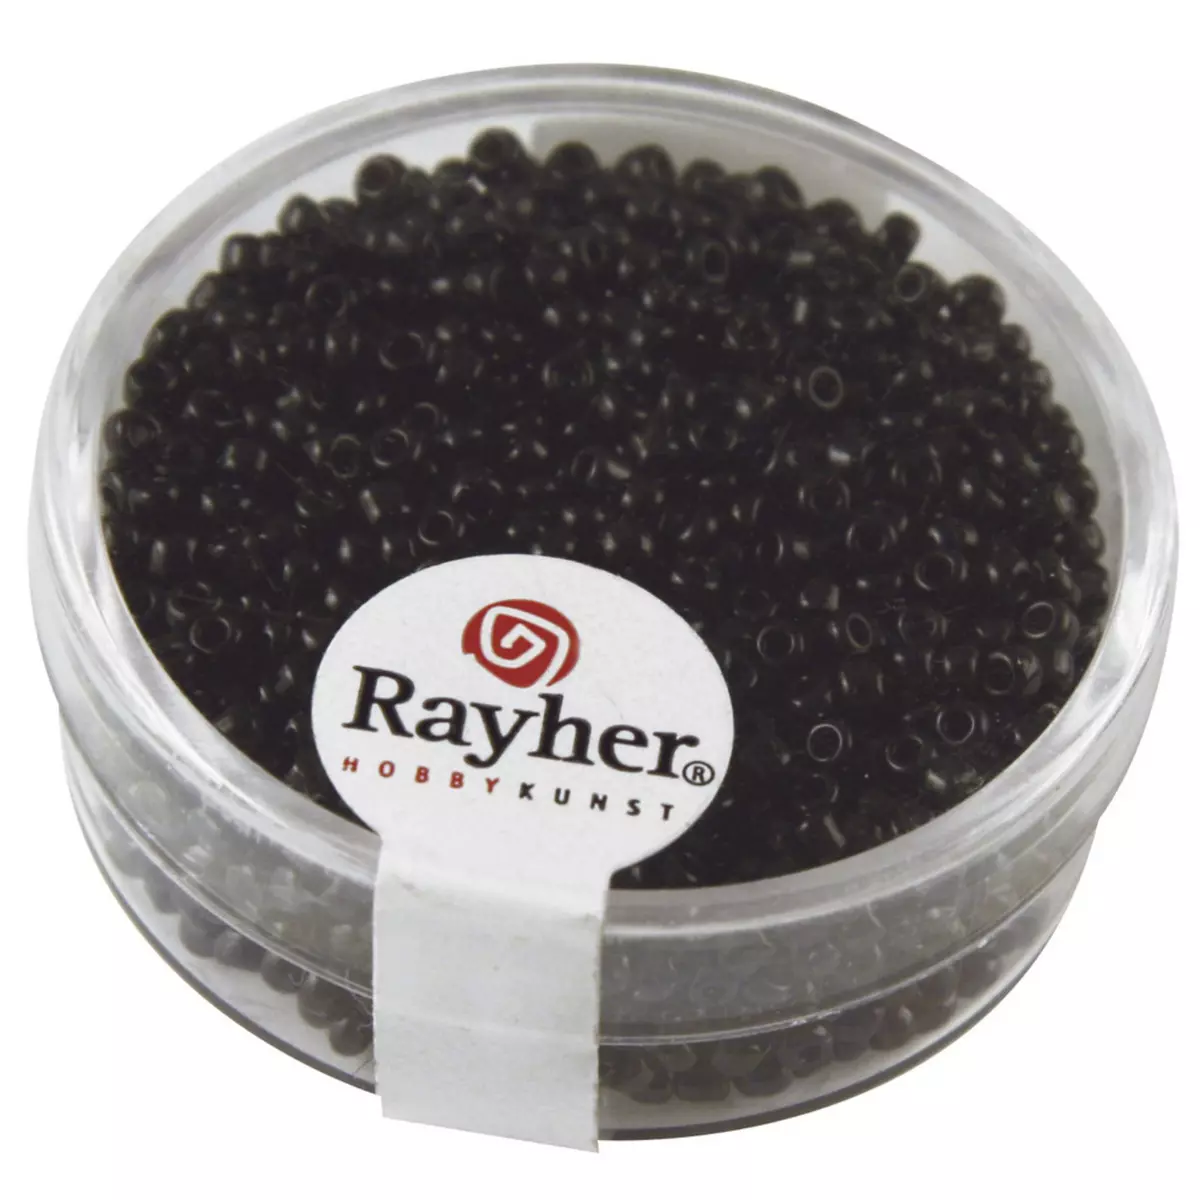 Rayher Rocailles, 2 mm ø, opaques, blanc, boîte 17g